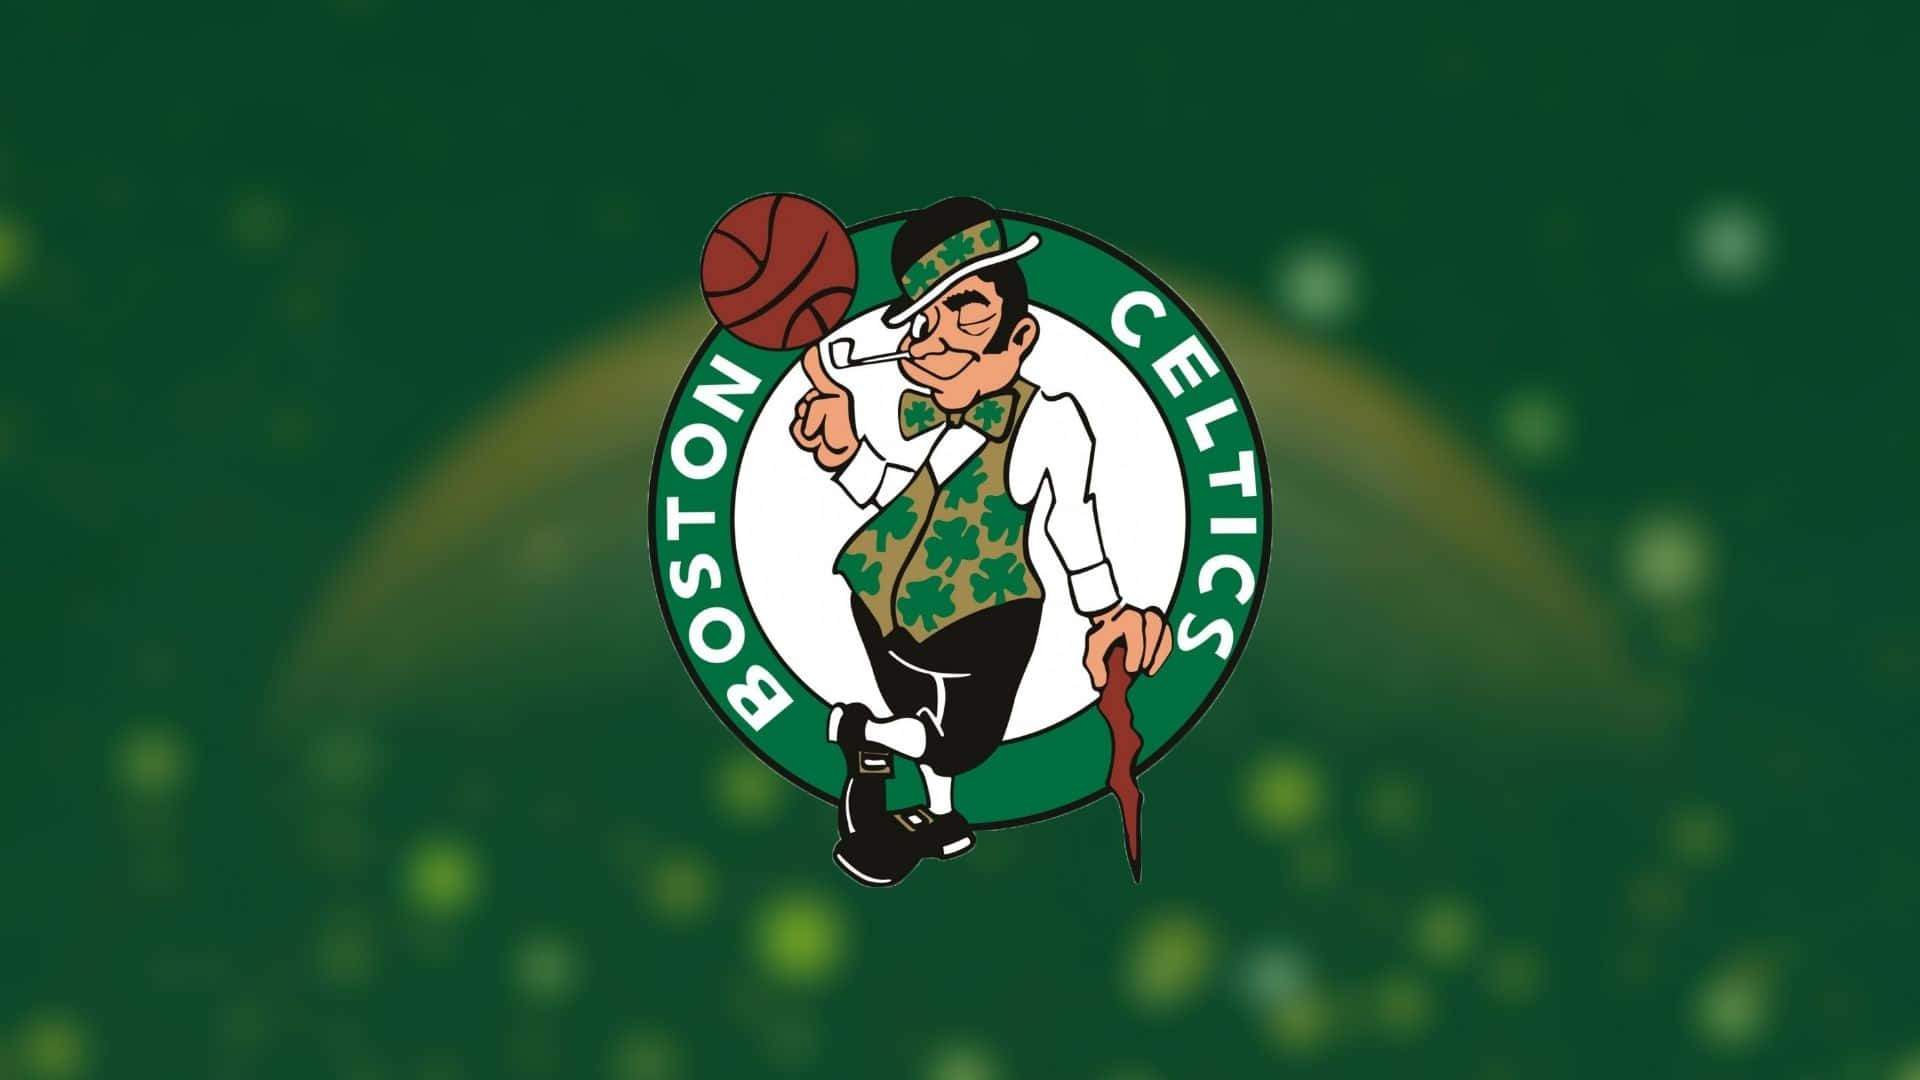 Iboston Celtics [in Seguito Alla Loro] Quinta Vittoria Nel Campionato Nba Sfondo